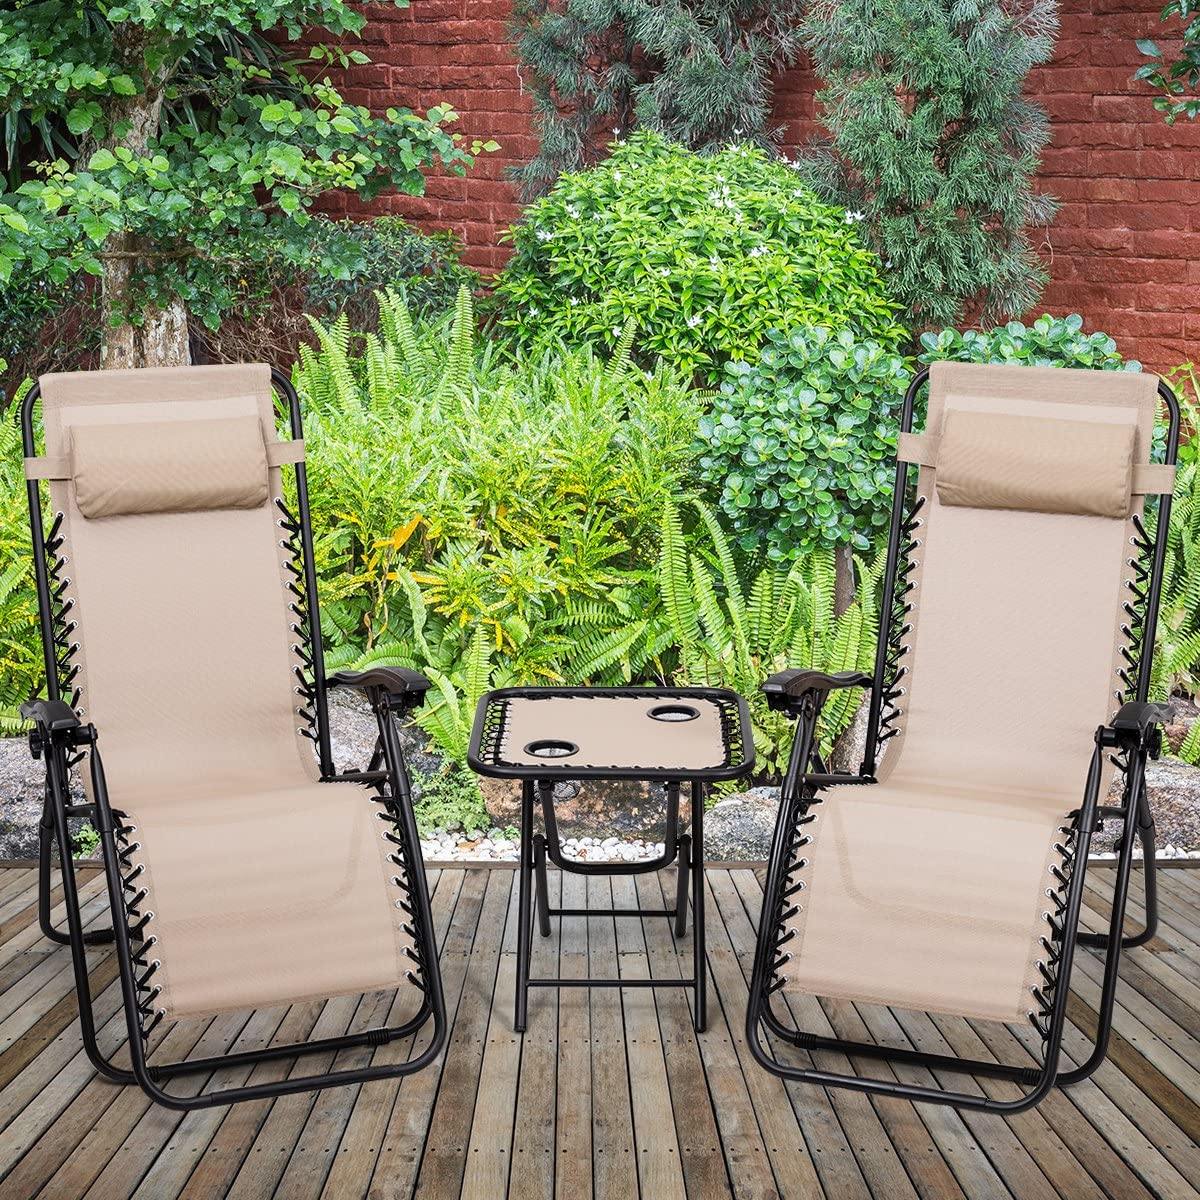 3 PCS Zero Gravity Chair Patio Chaise Lounge Chairs Outdoor Yard - Giantexus